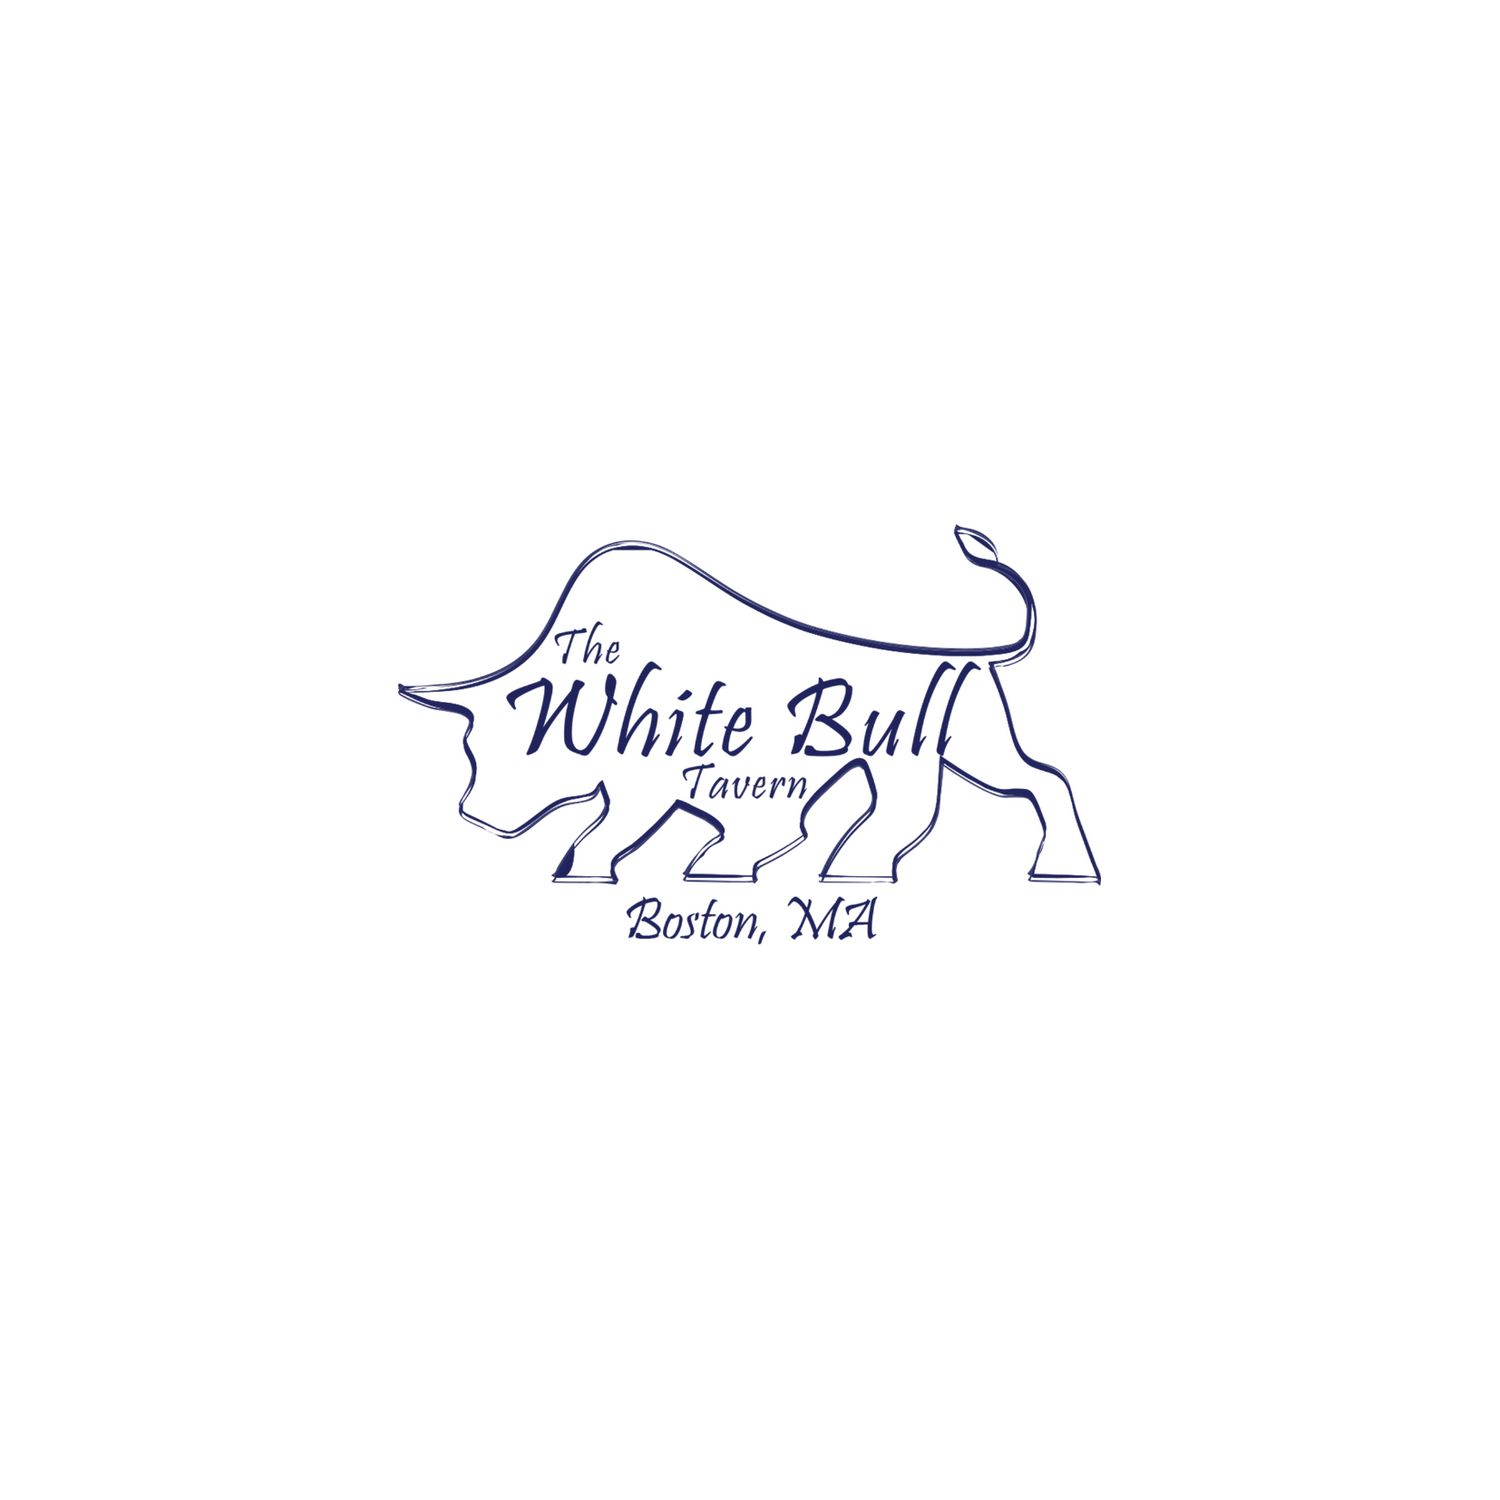 The White Bull Tavern